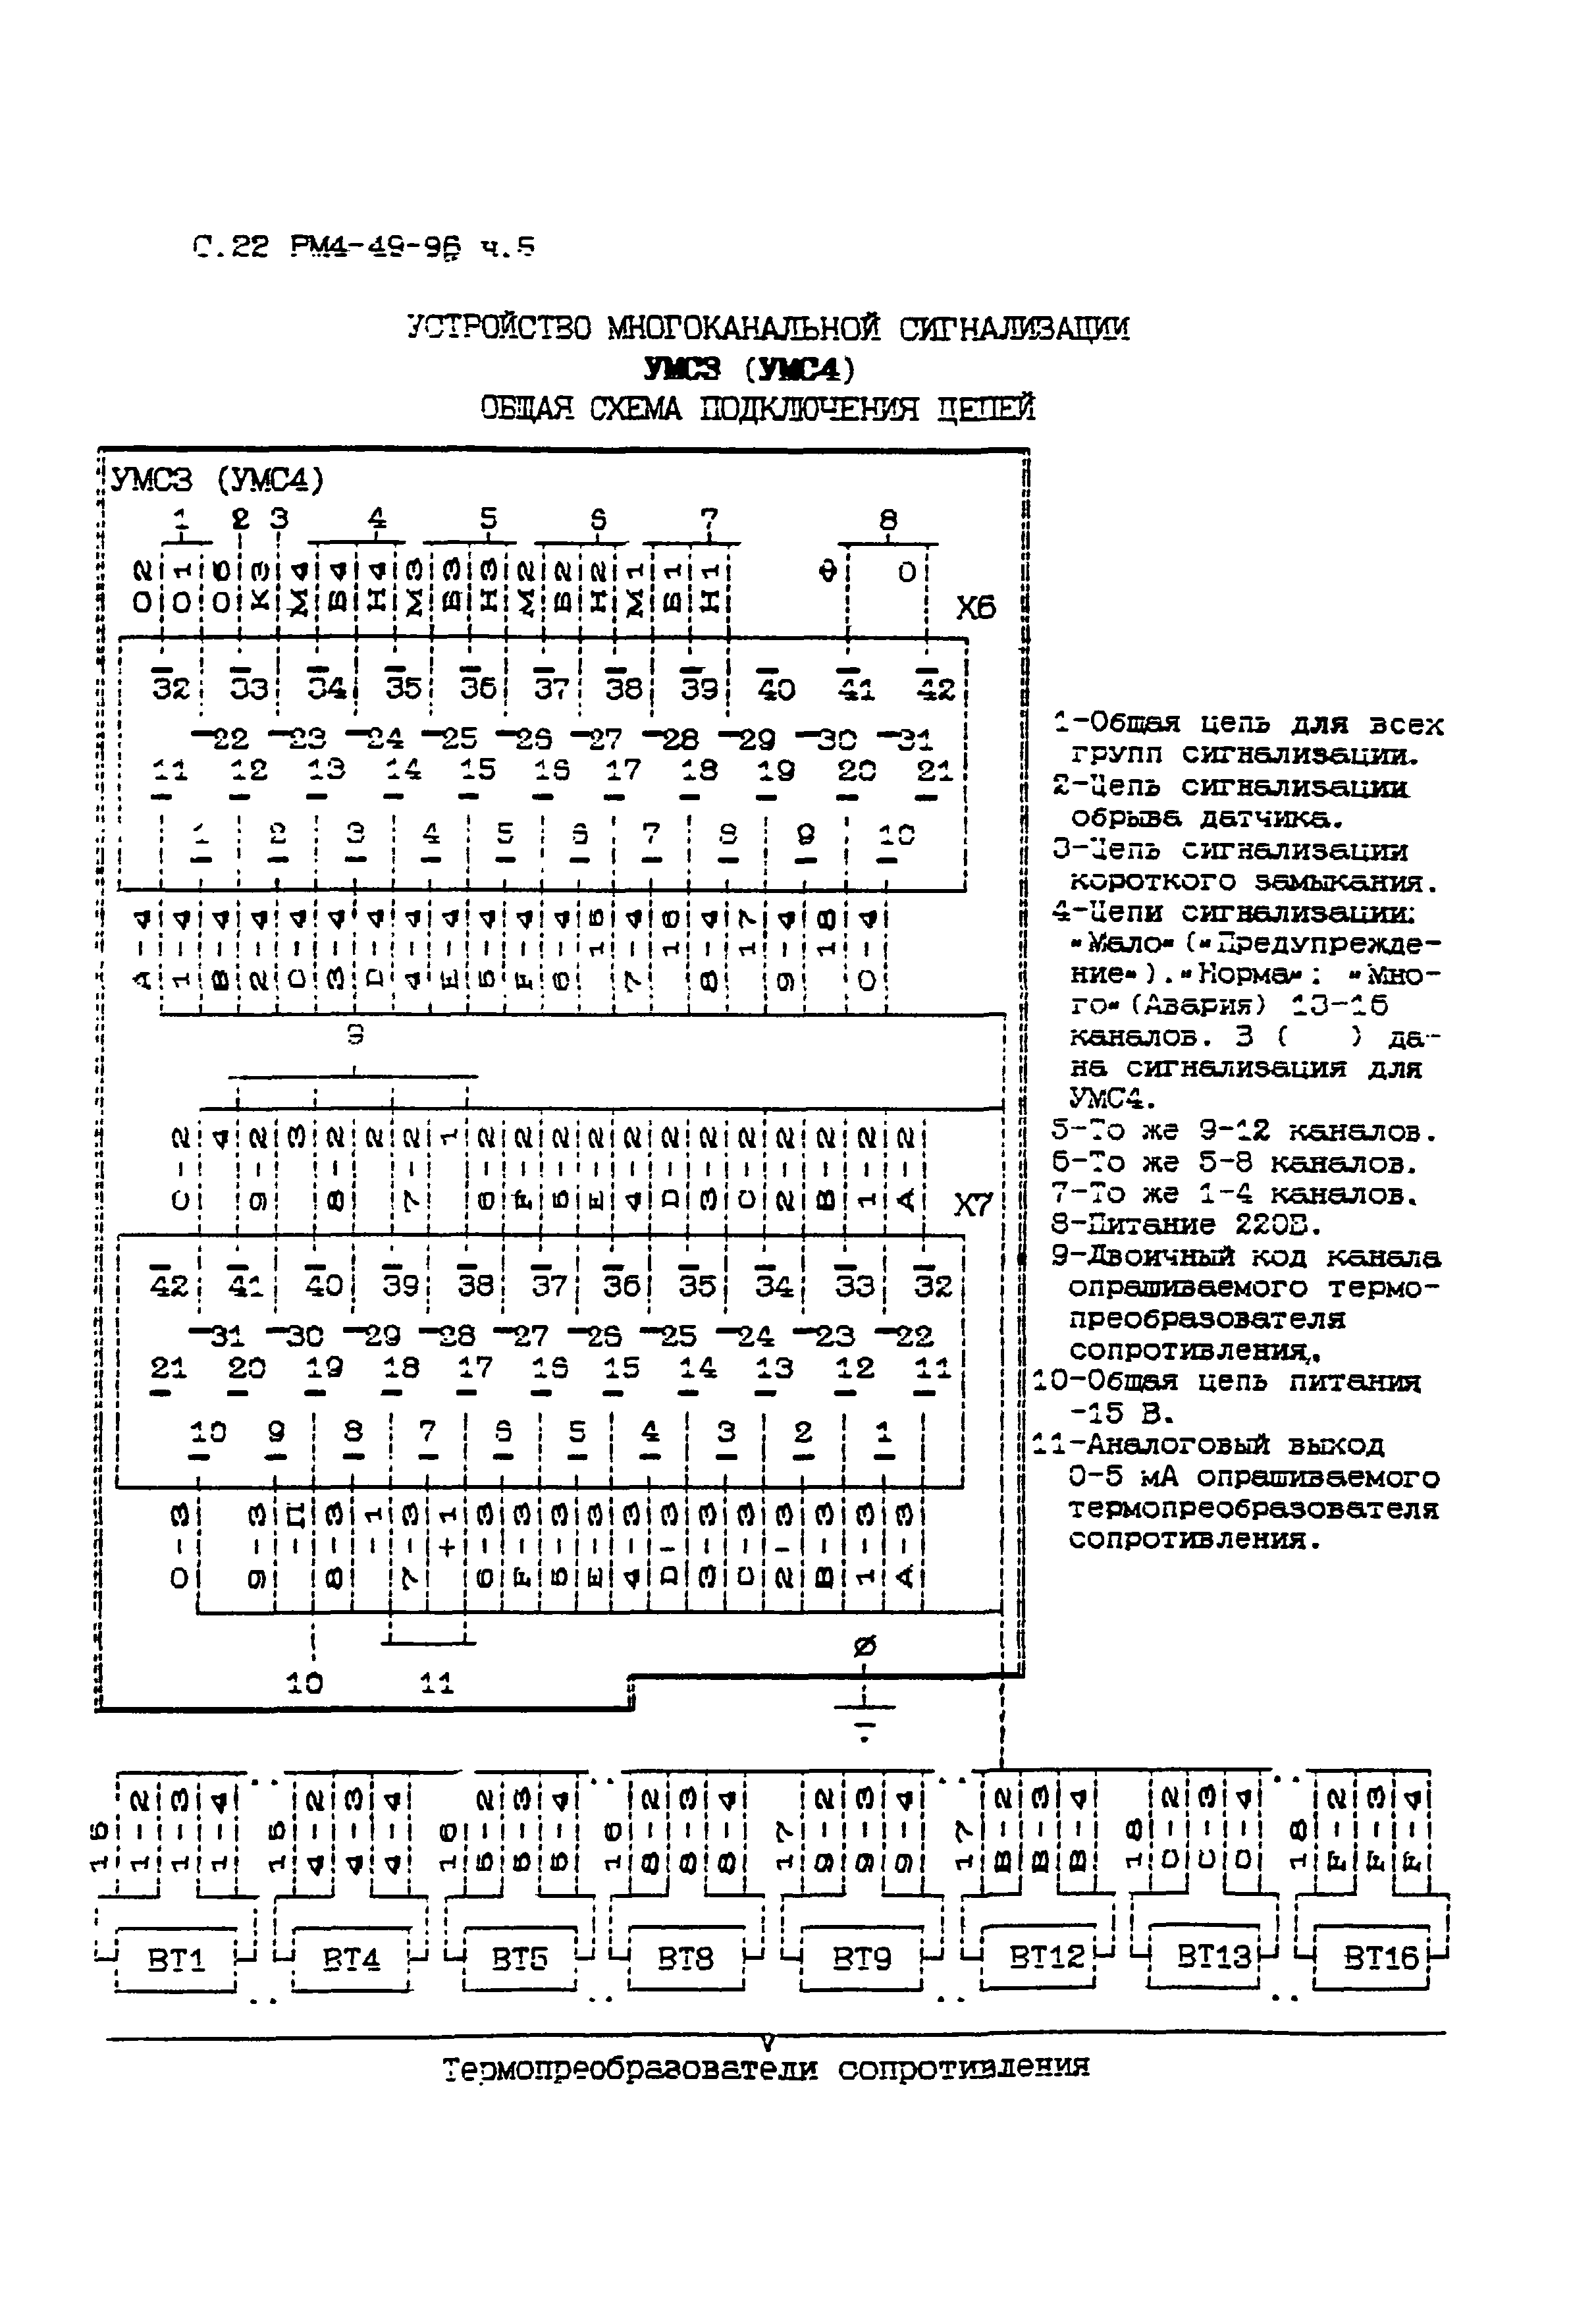 РМ 4-49-96